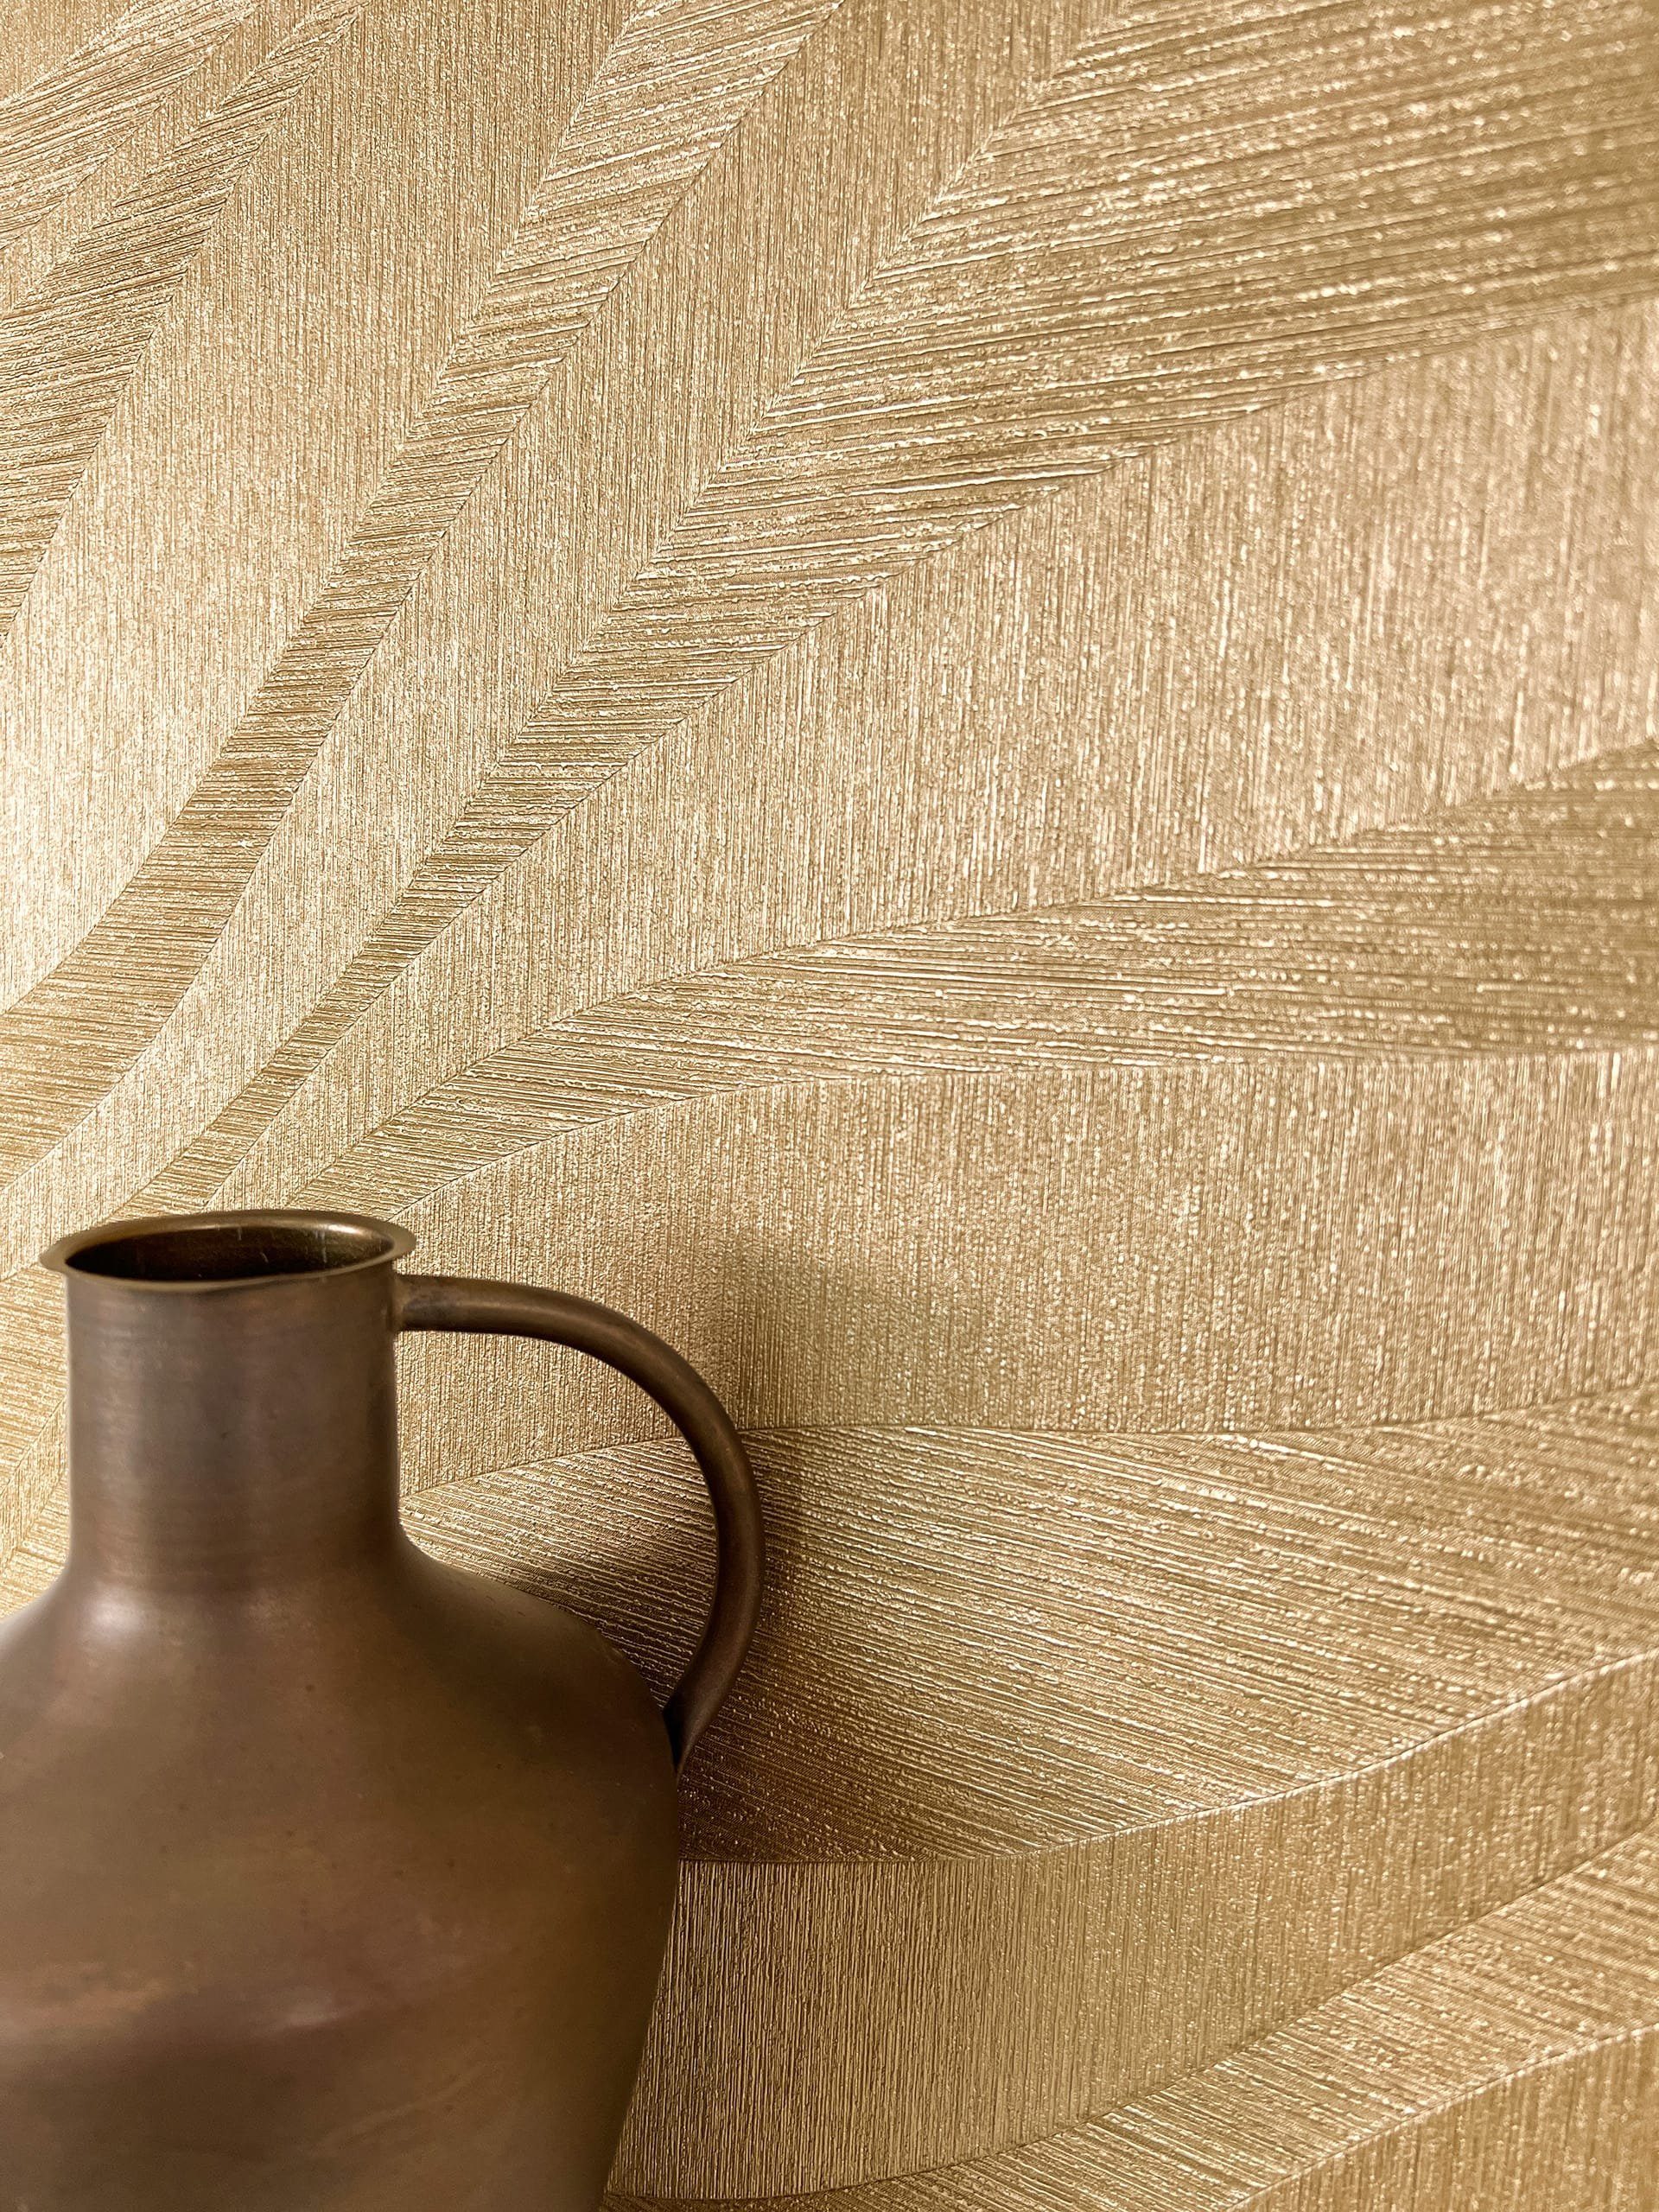 Newroom Vliestapete, Gold Tapete Glamour Wellen - Glanztapete Mustertapete Metallic Modern 3D Optik Linien Struktur für Wohnzimmer Schlafzimmer Küche